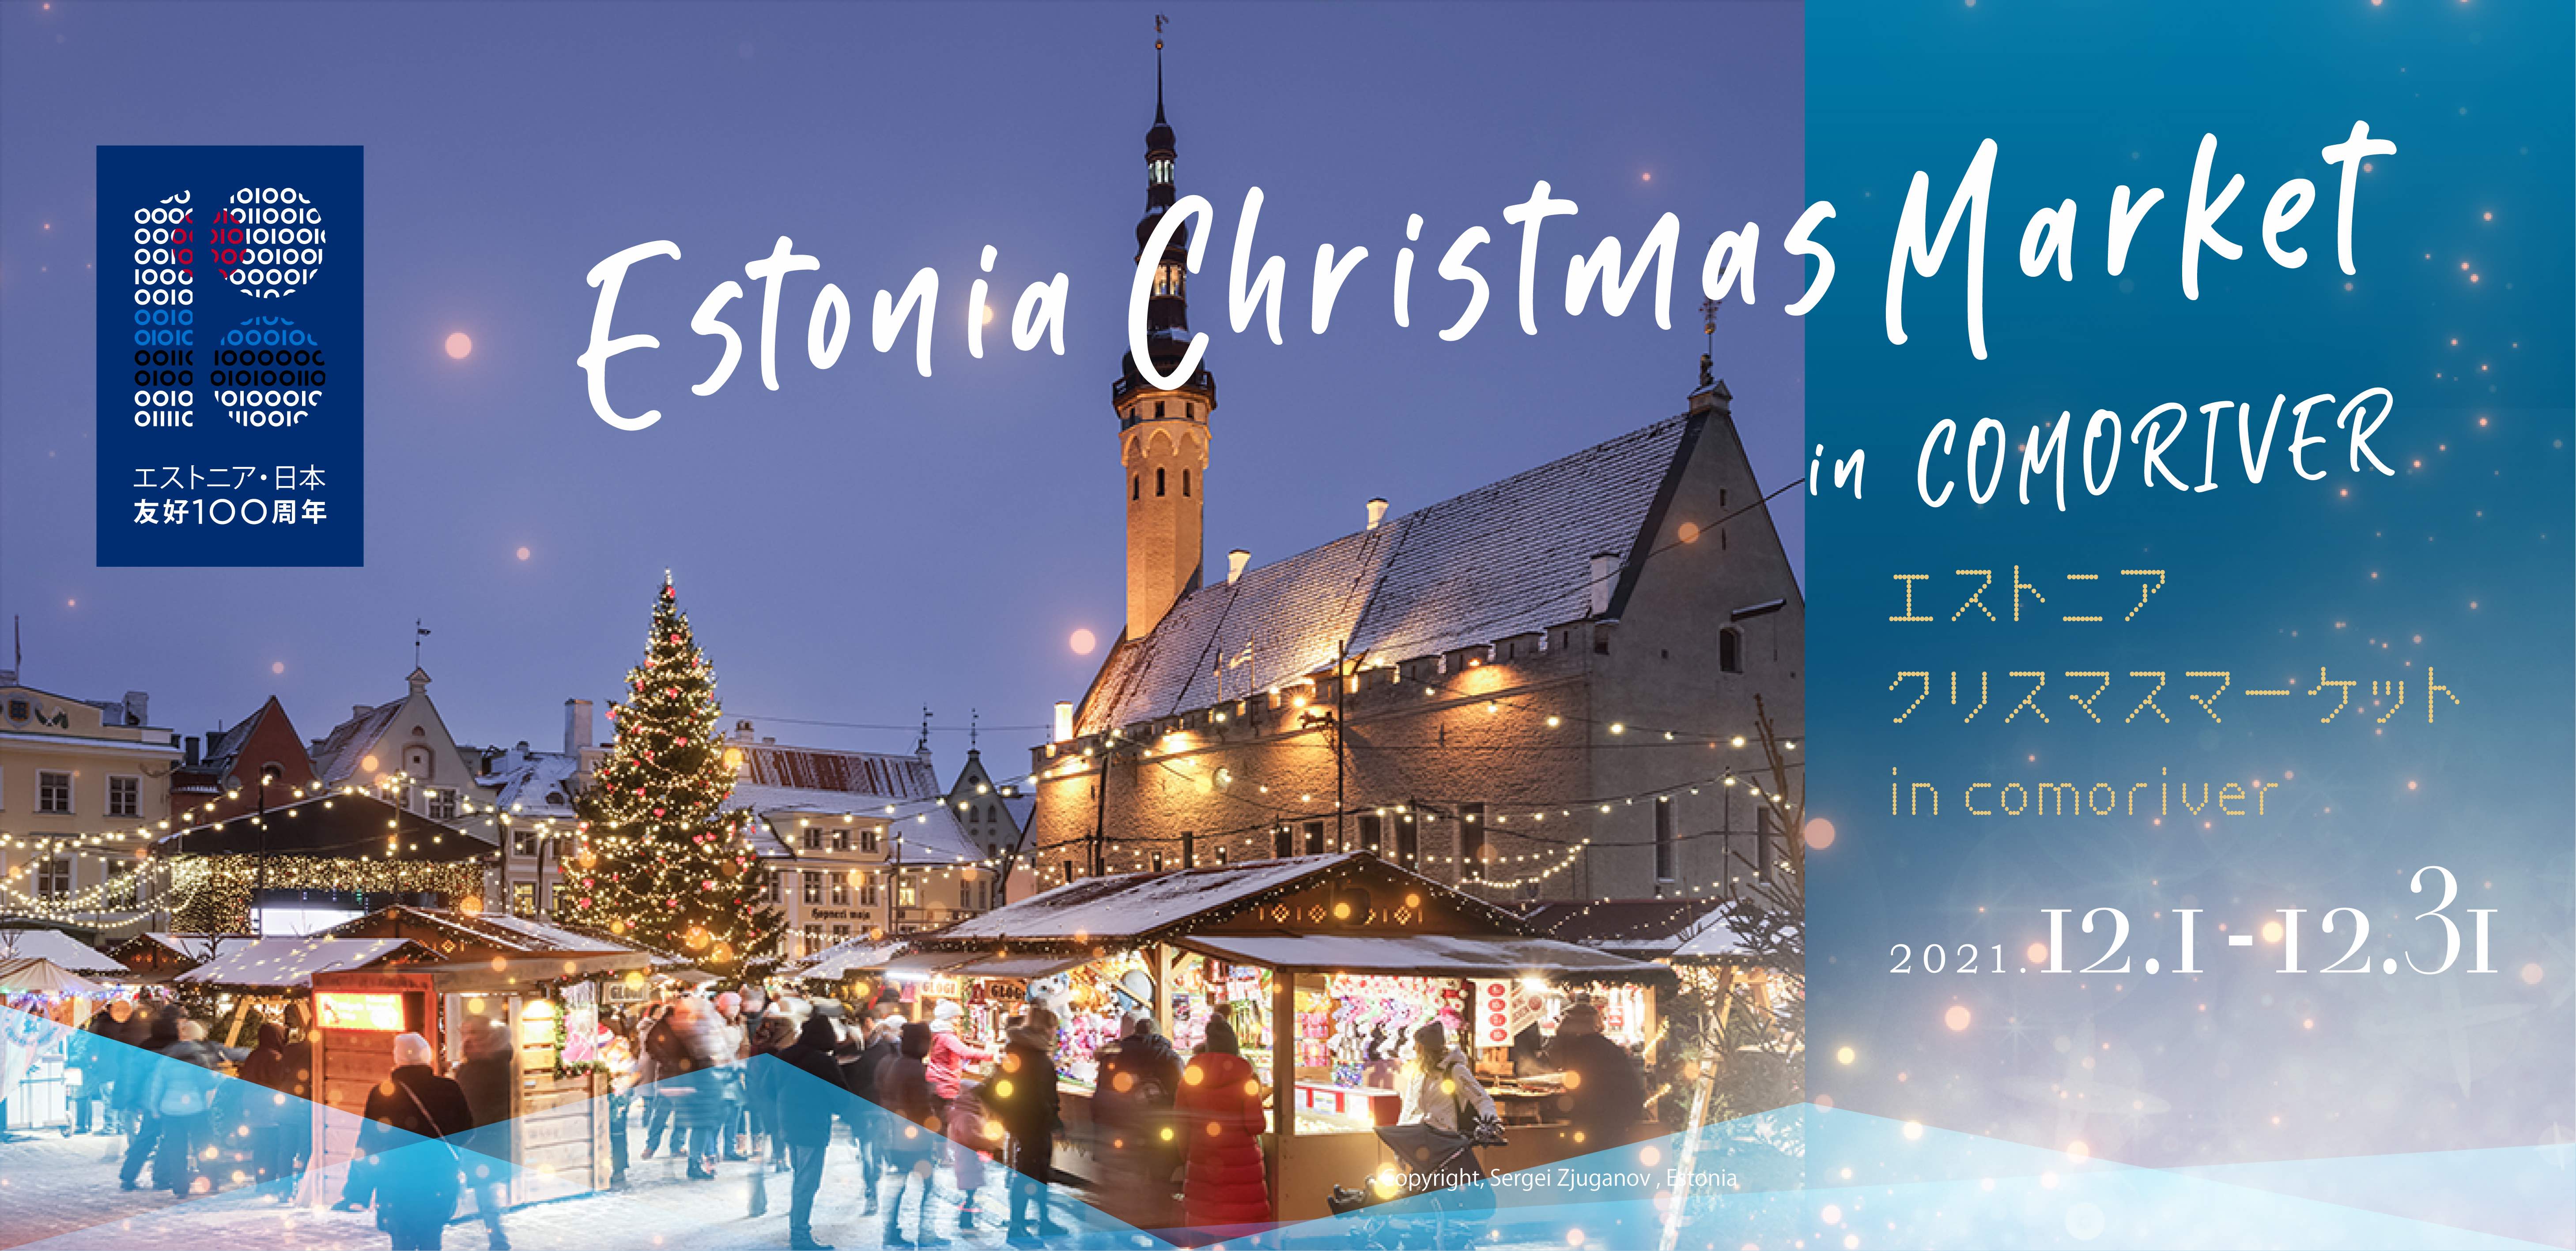 4mの巨大クリスマスツリーがお出迎え ときたまひみつきちcomoriverでエストニアクリスマスマーケットを開催 株式会社温泉道場のプレスリリース